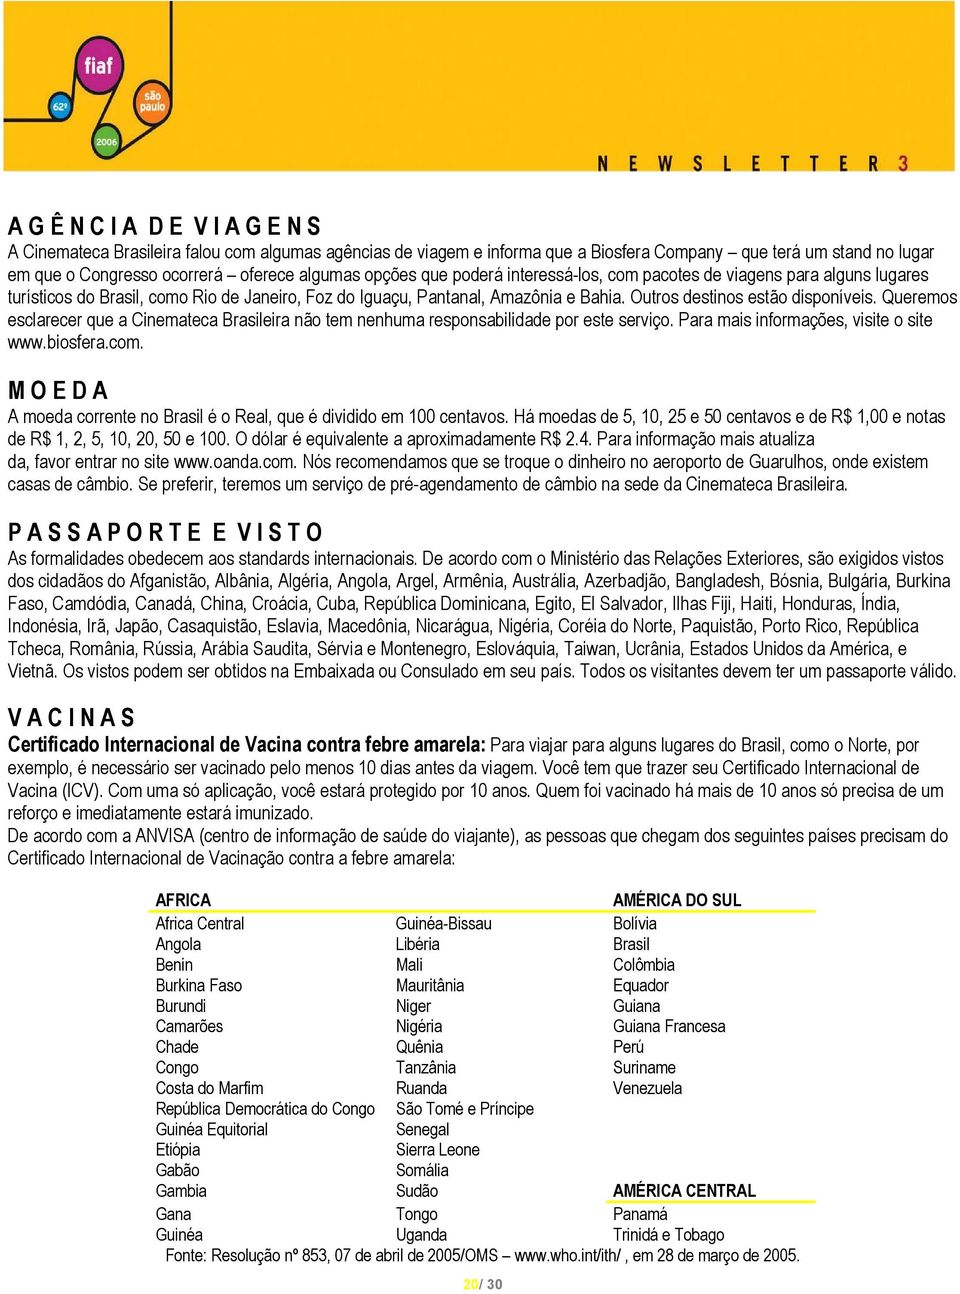 Queremos esclarecer que a Cinemateca Brasileira não tem nenhuma responsabilidade por este serviço. Para mais informações, visite o site www.biosfera.com.